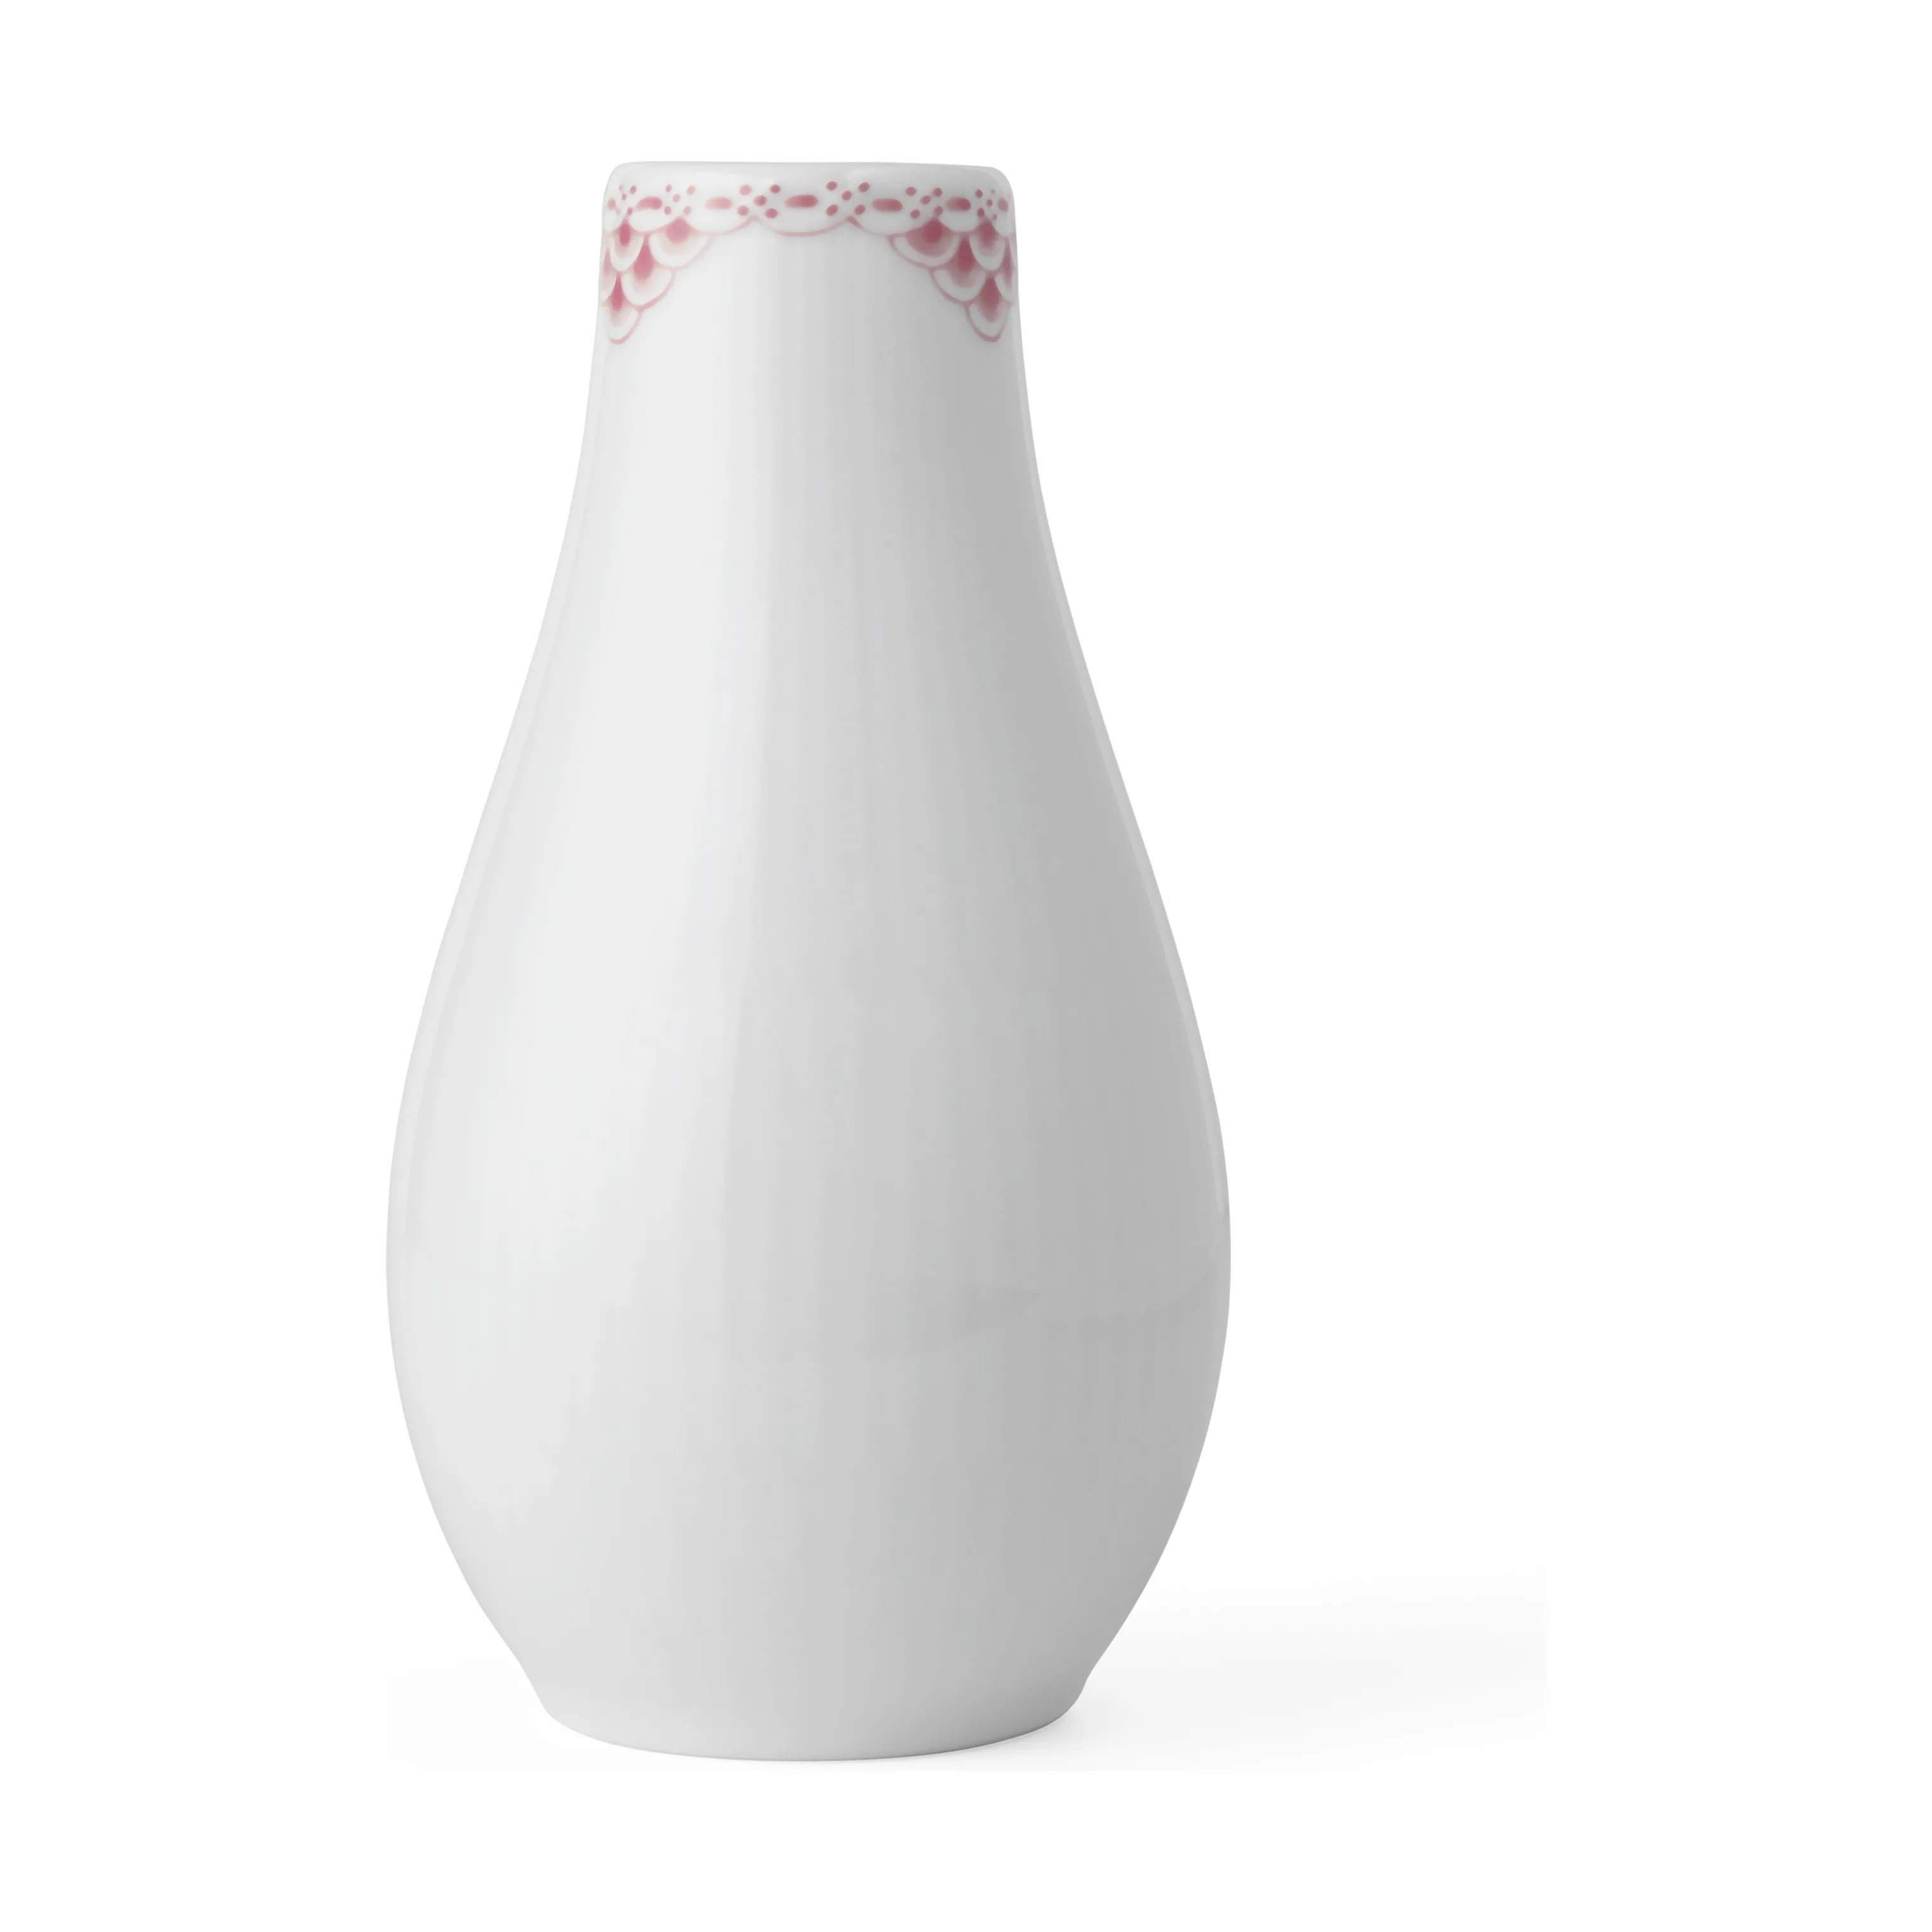 Koral Riflet Blonde Vase, hvid/koral, large